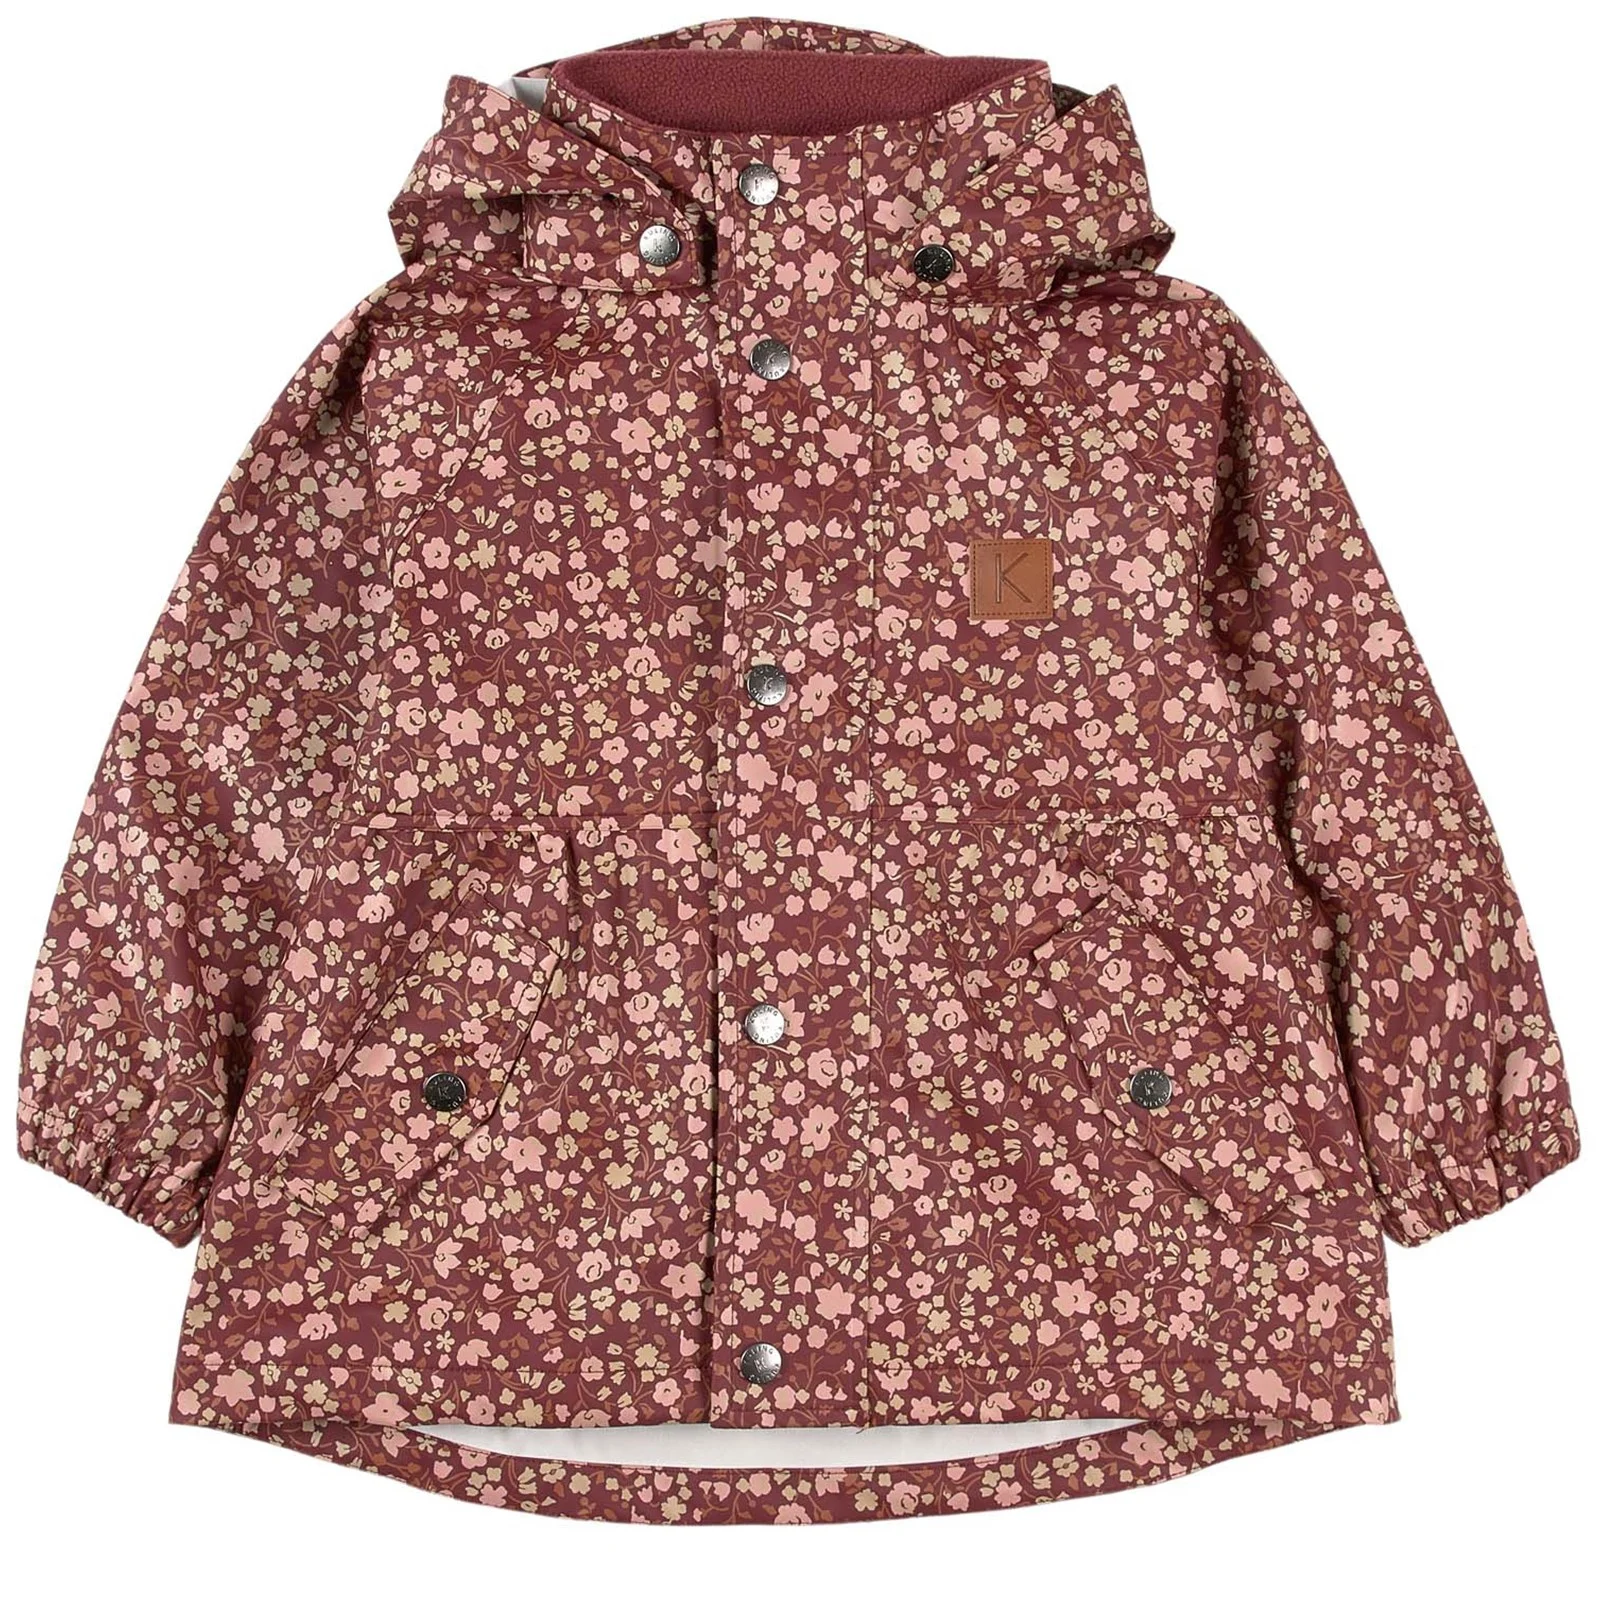 Kuling rain jacket. sizes 86/92, 98/104, 110/116, 122/128